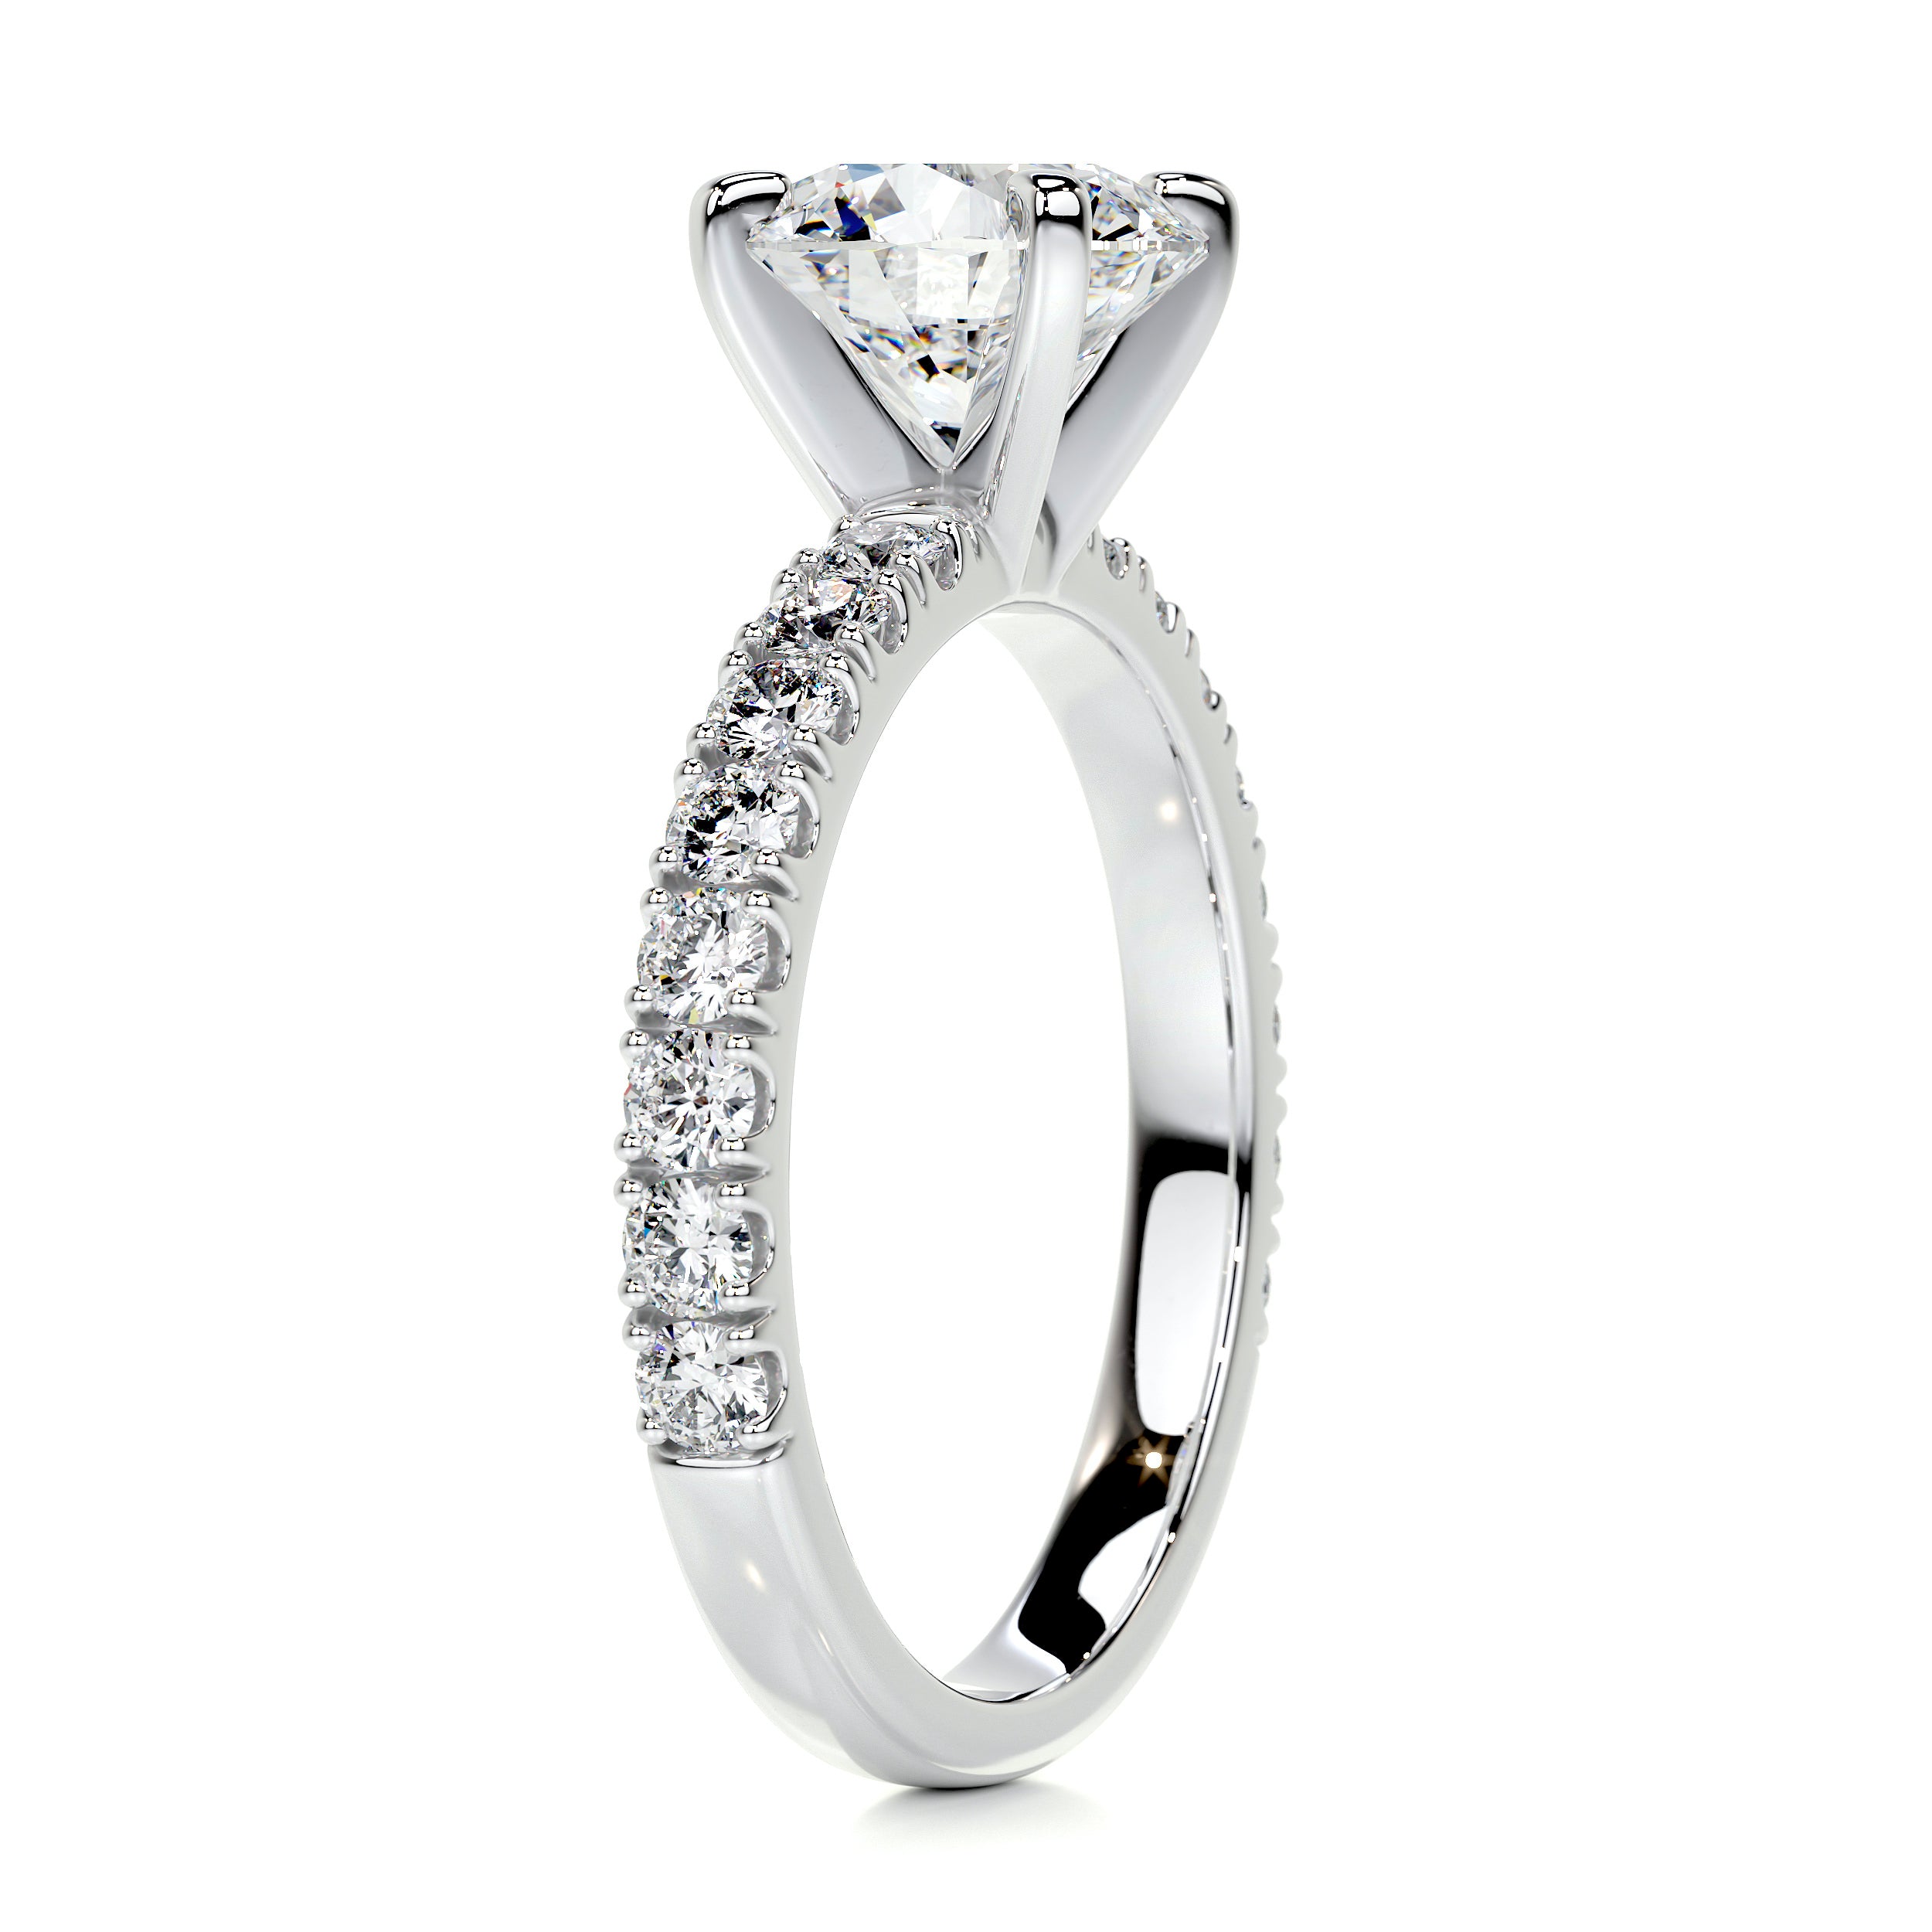 Alison Diamond Engagement Ring -14K White Gold